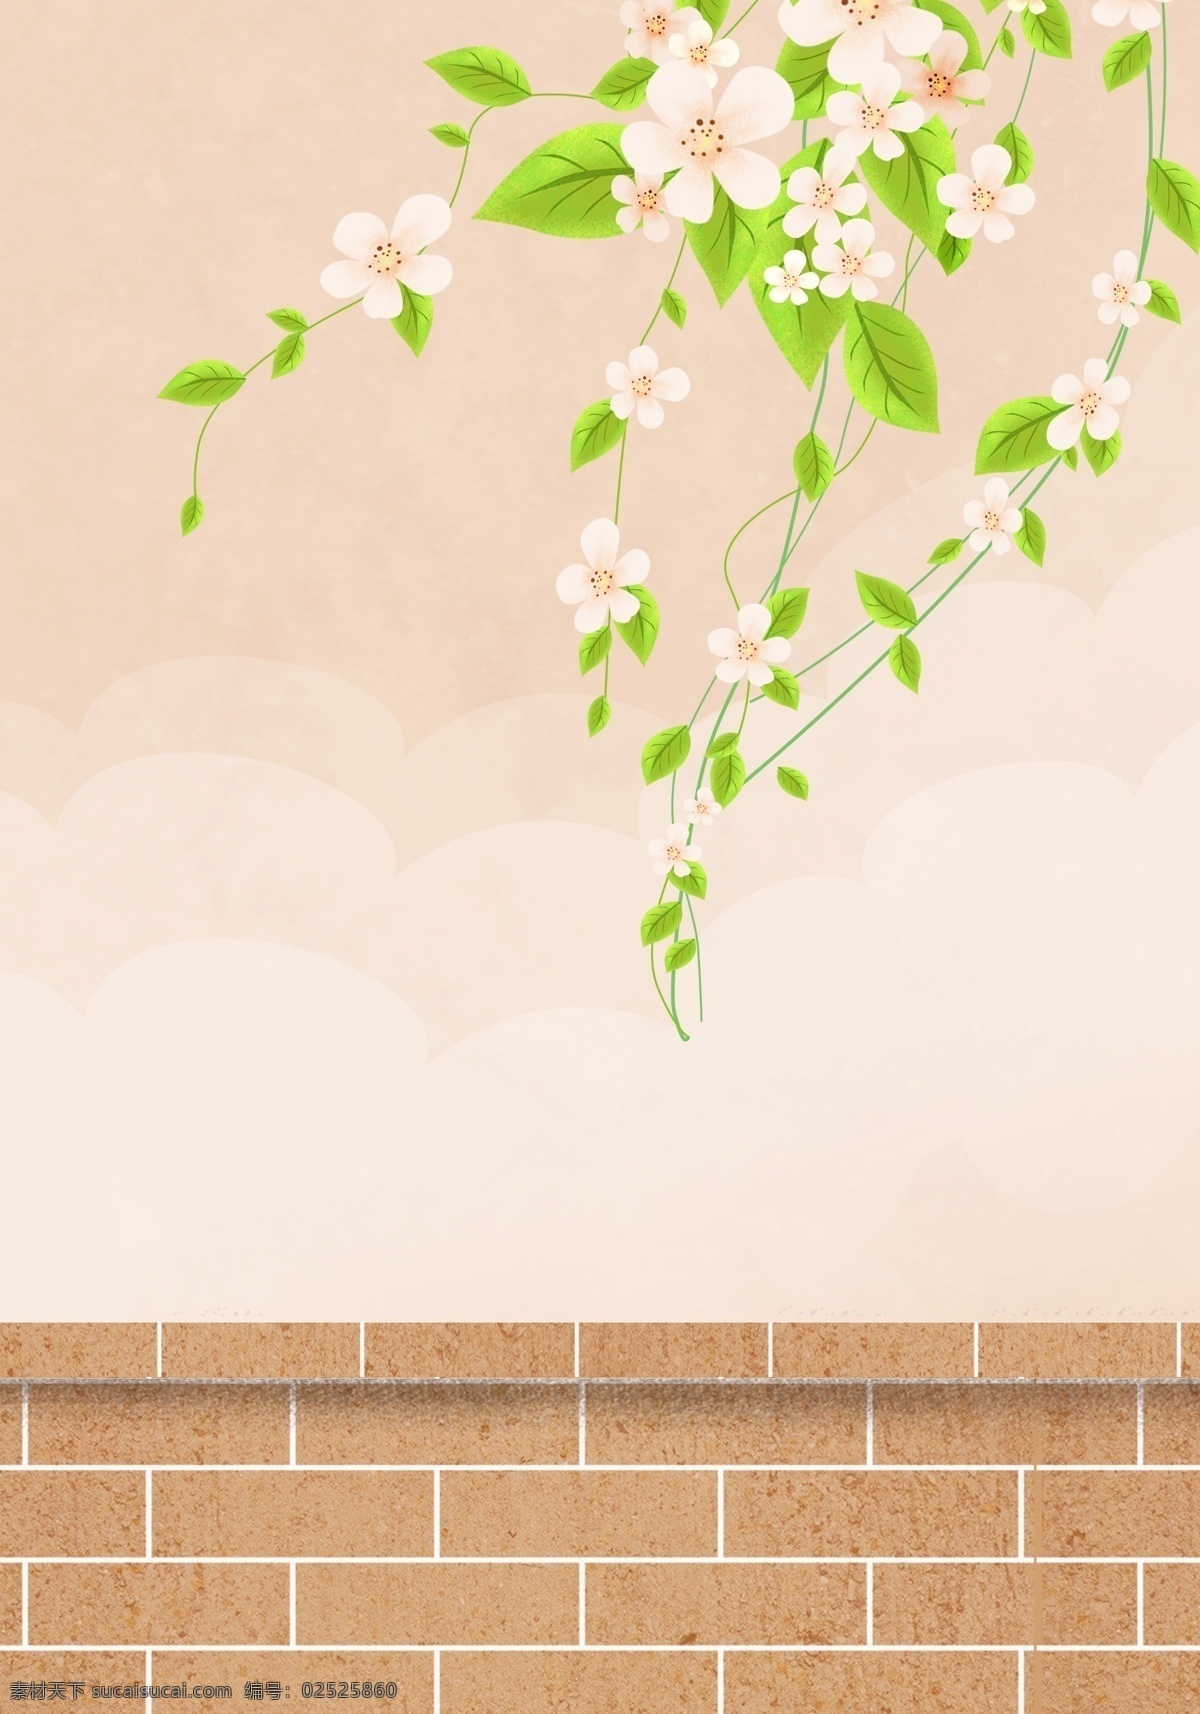 春天 唯美 小 清晰 植物 花卉 背景 插画背景 植物背景 草地背景 绿地背景 蓝天白云